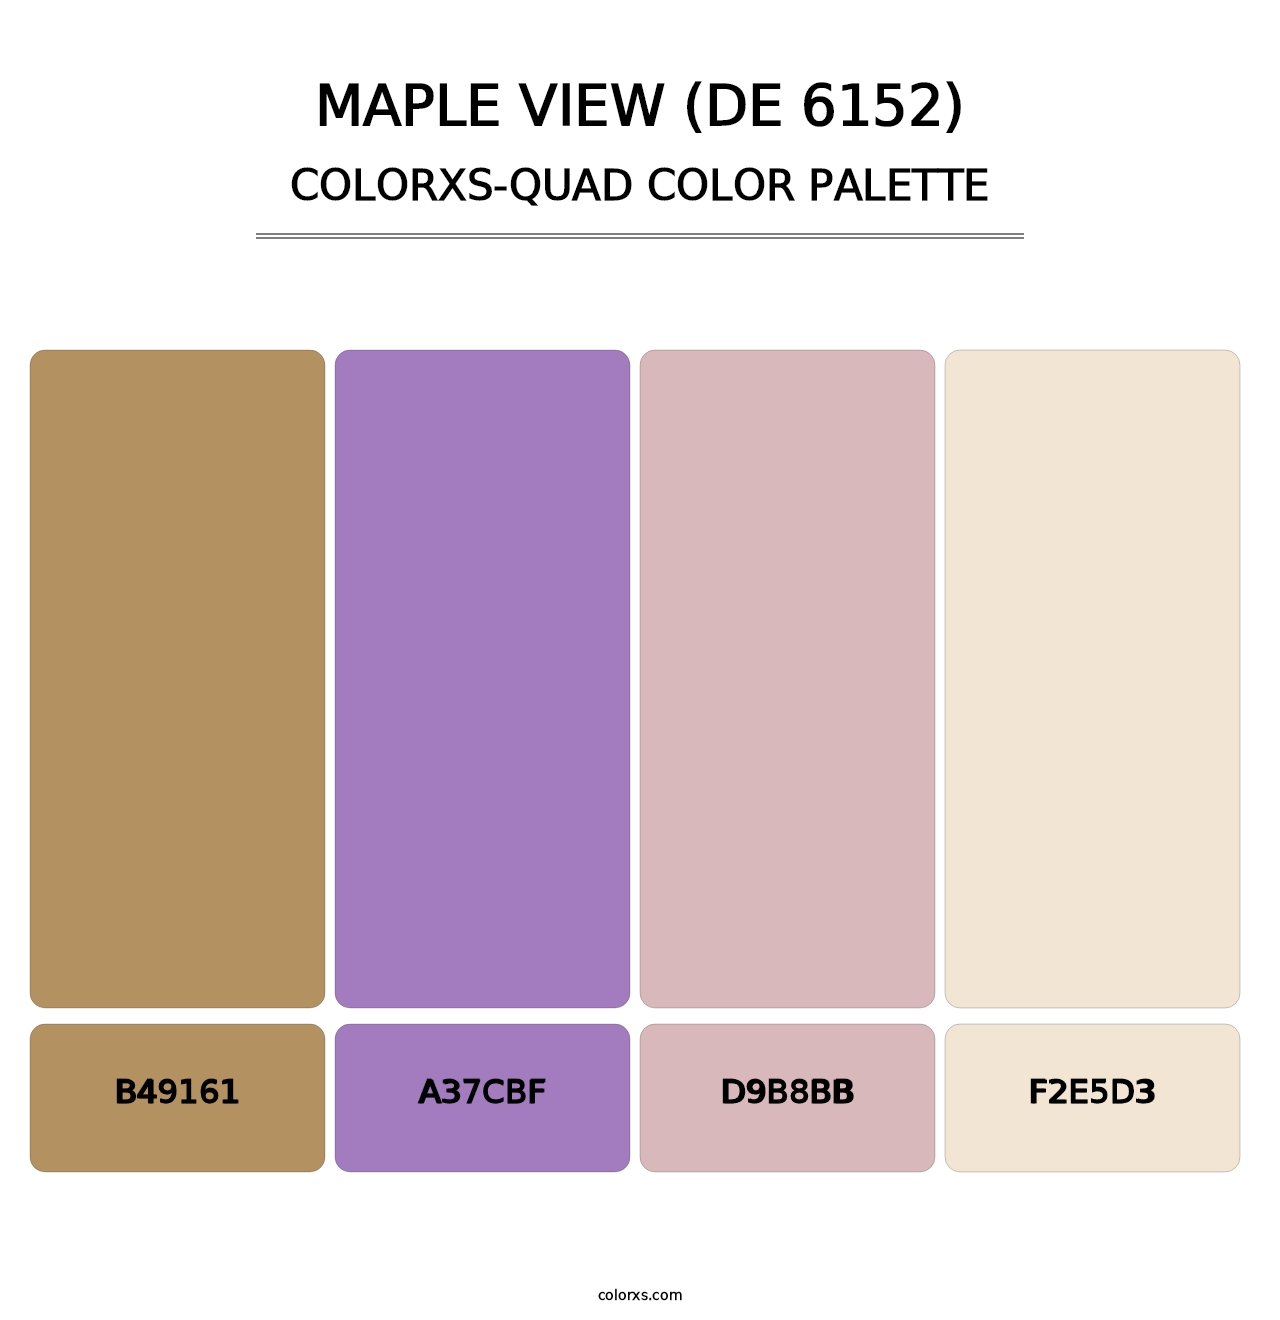 Maple View (DE 6152) - Colorxs Quad Palette